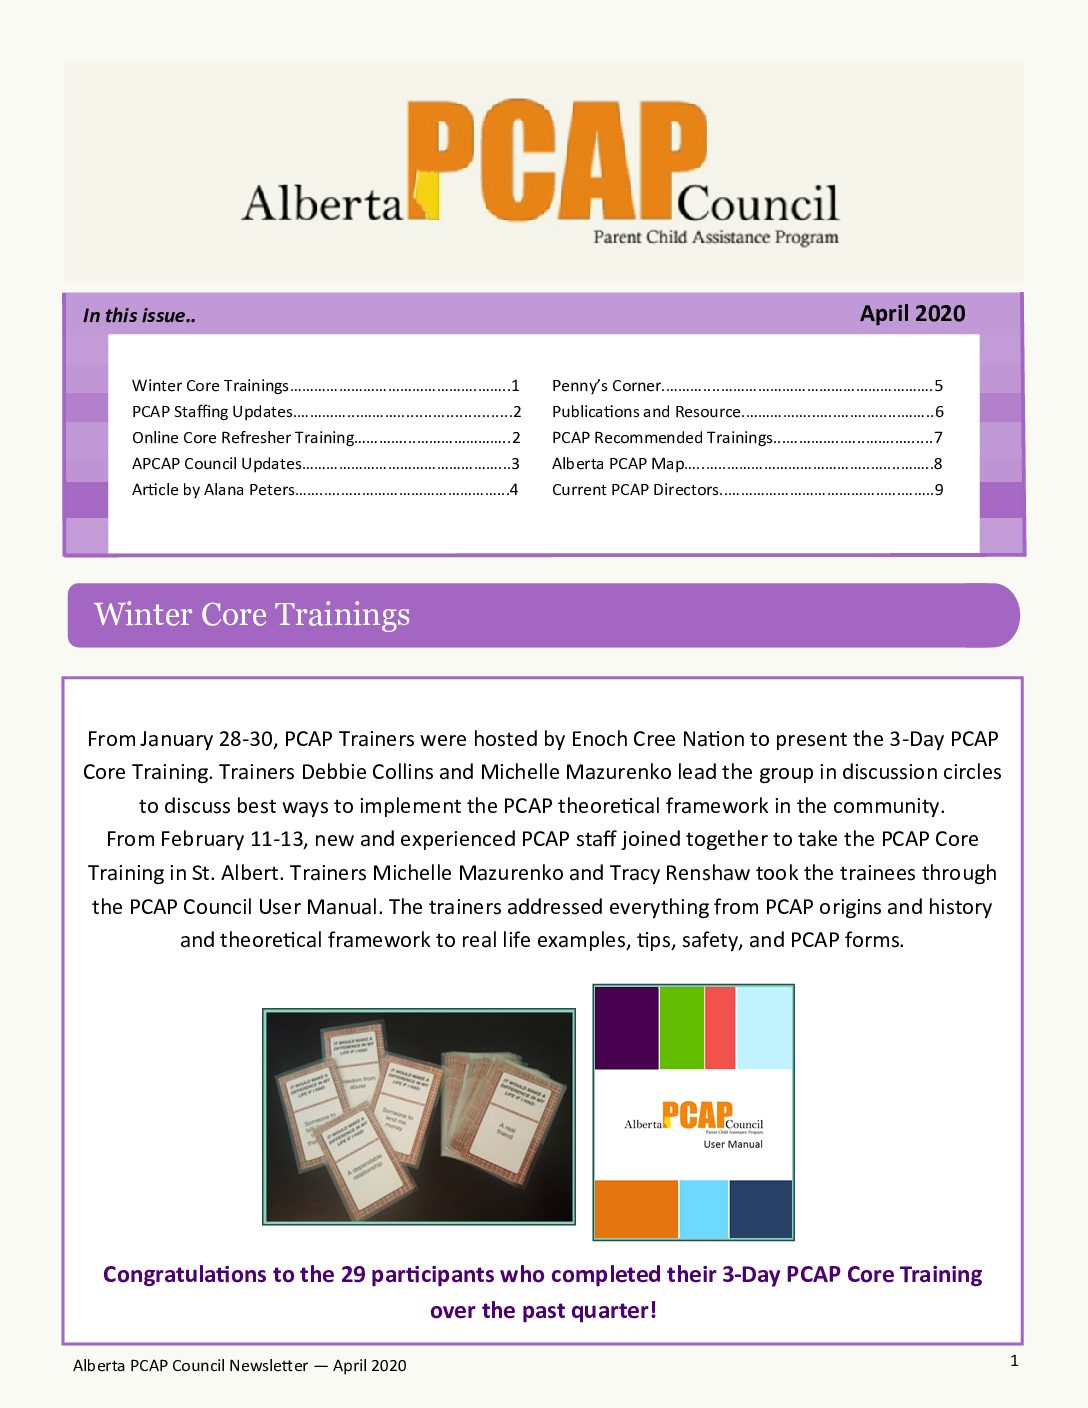 ABPCAP-Q4-Newsletter-April-2020-pdf